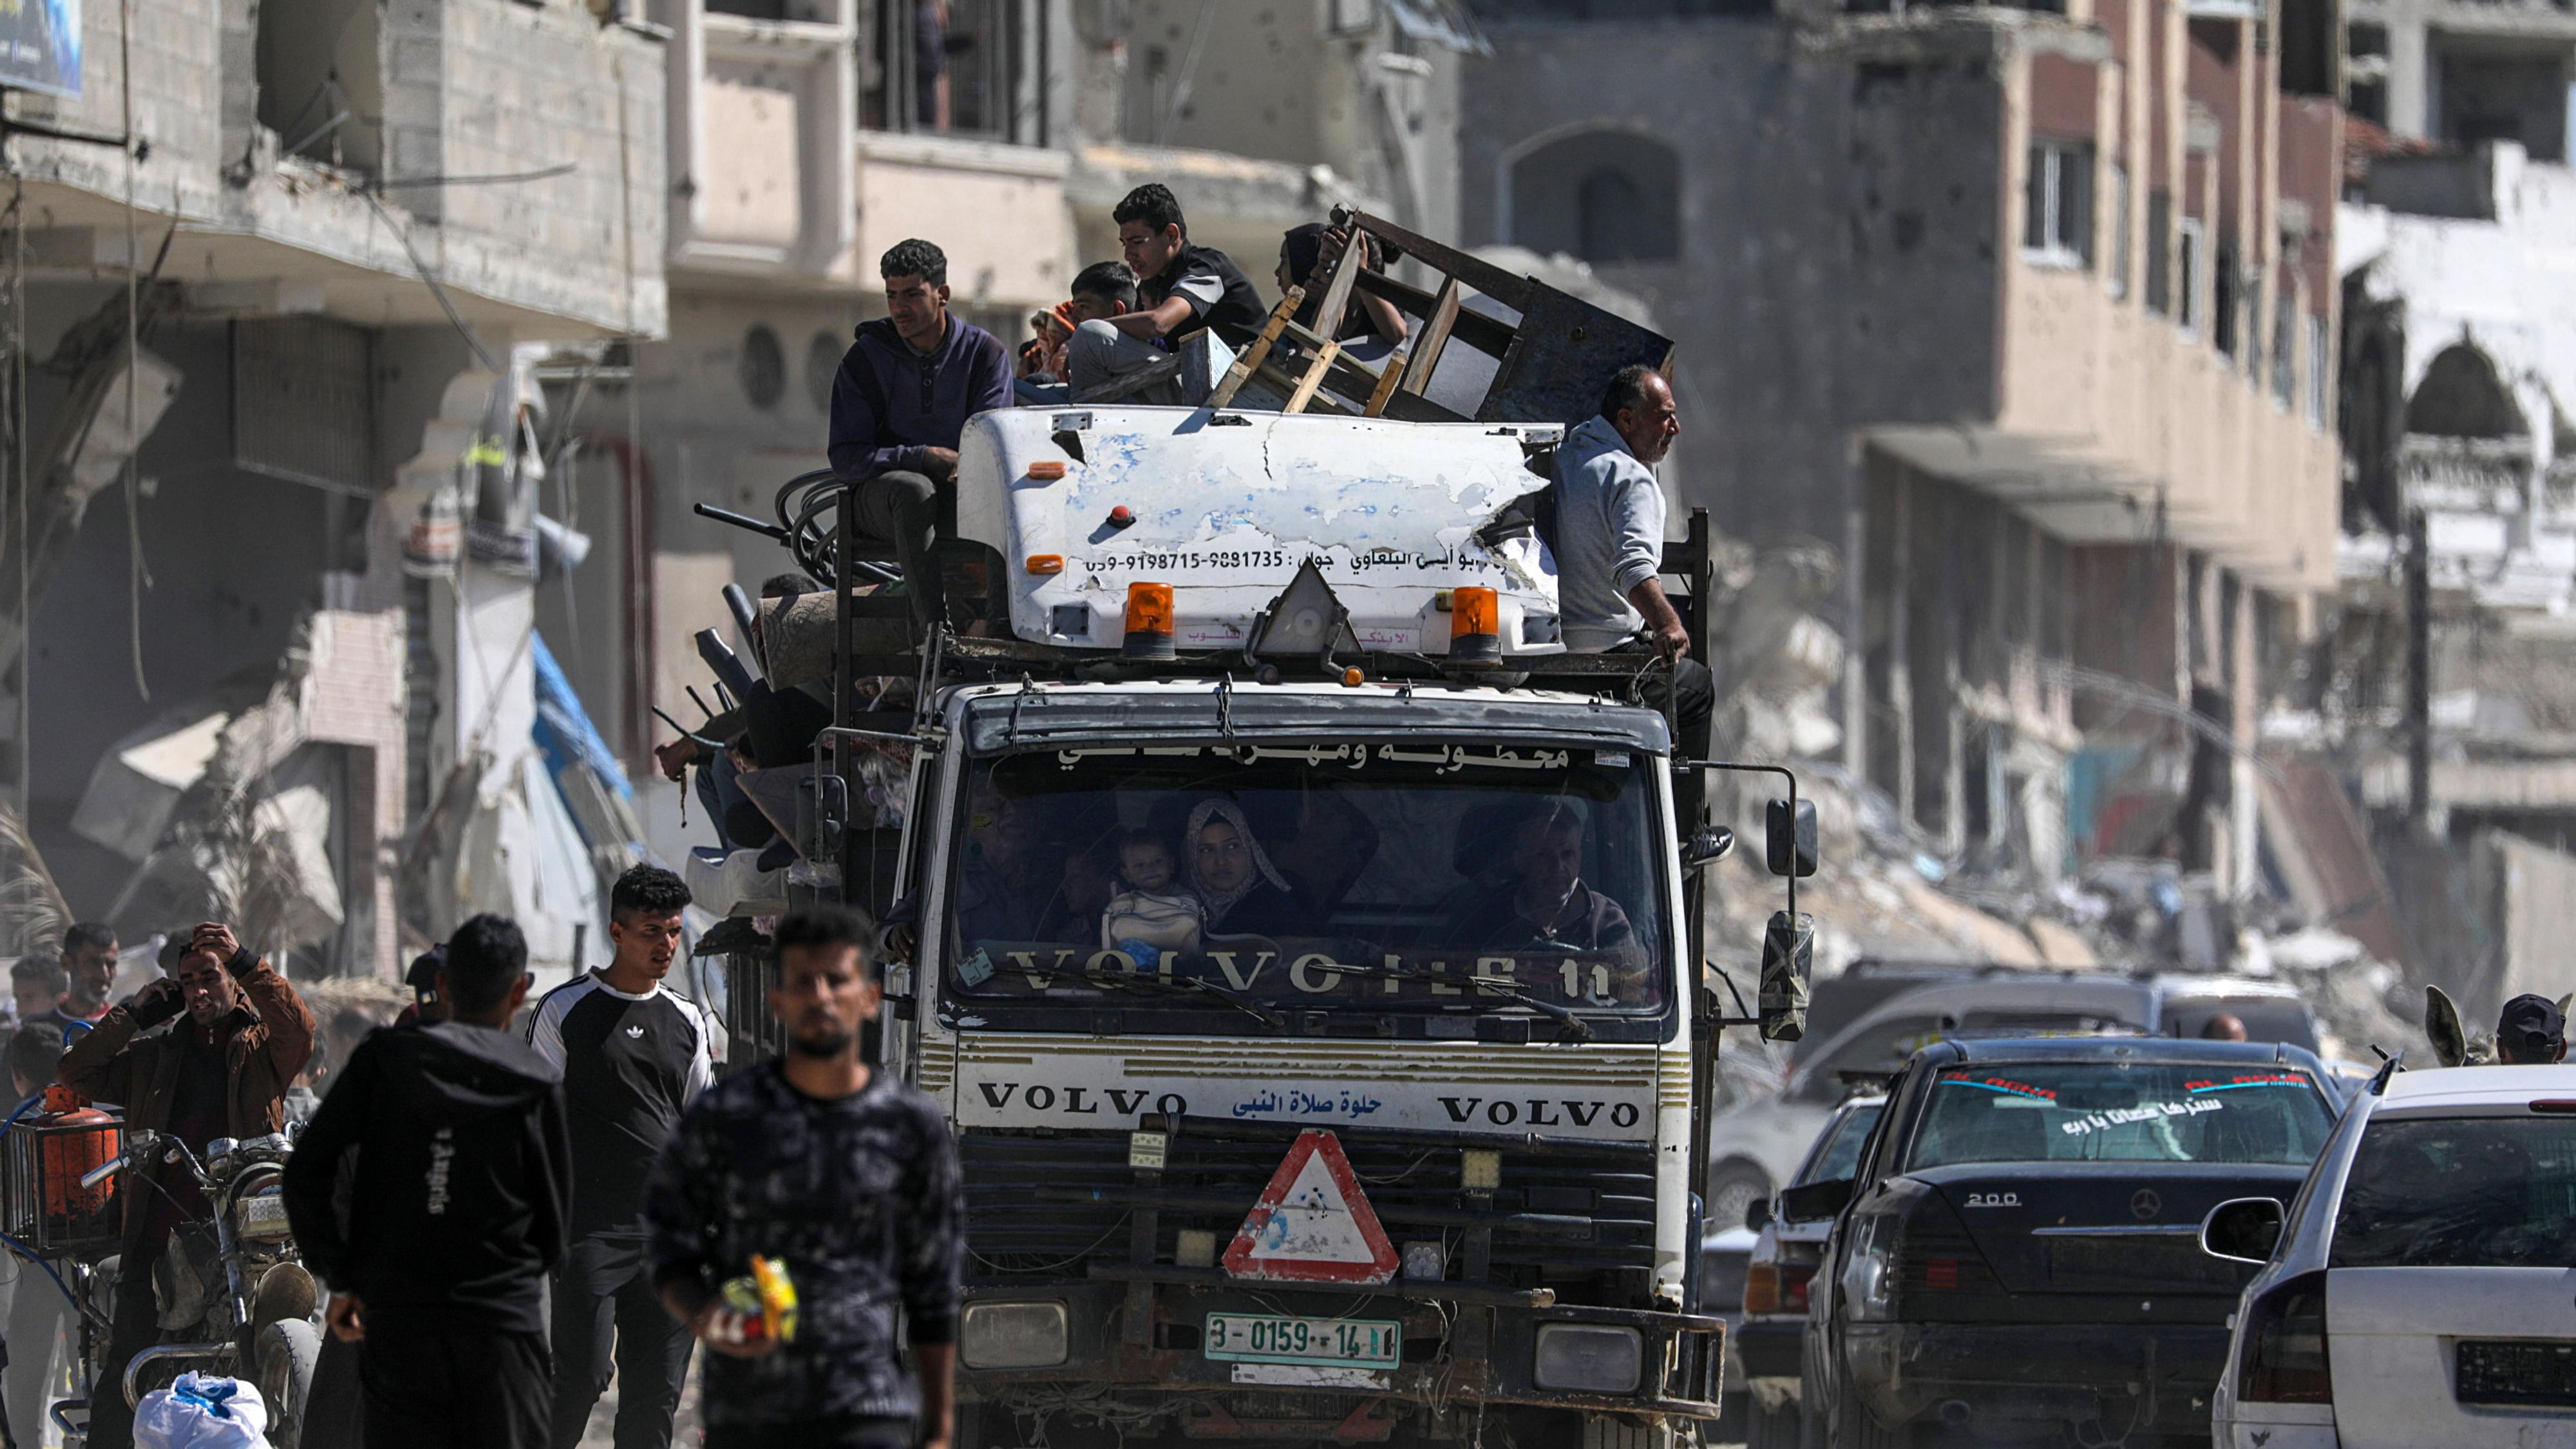 Guerra en Gaza, en directo | La UNRWA afirma que unos 80.000 gazatíes han huido de Ráfah desde el inicio de la ofensiva israelí